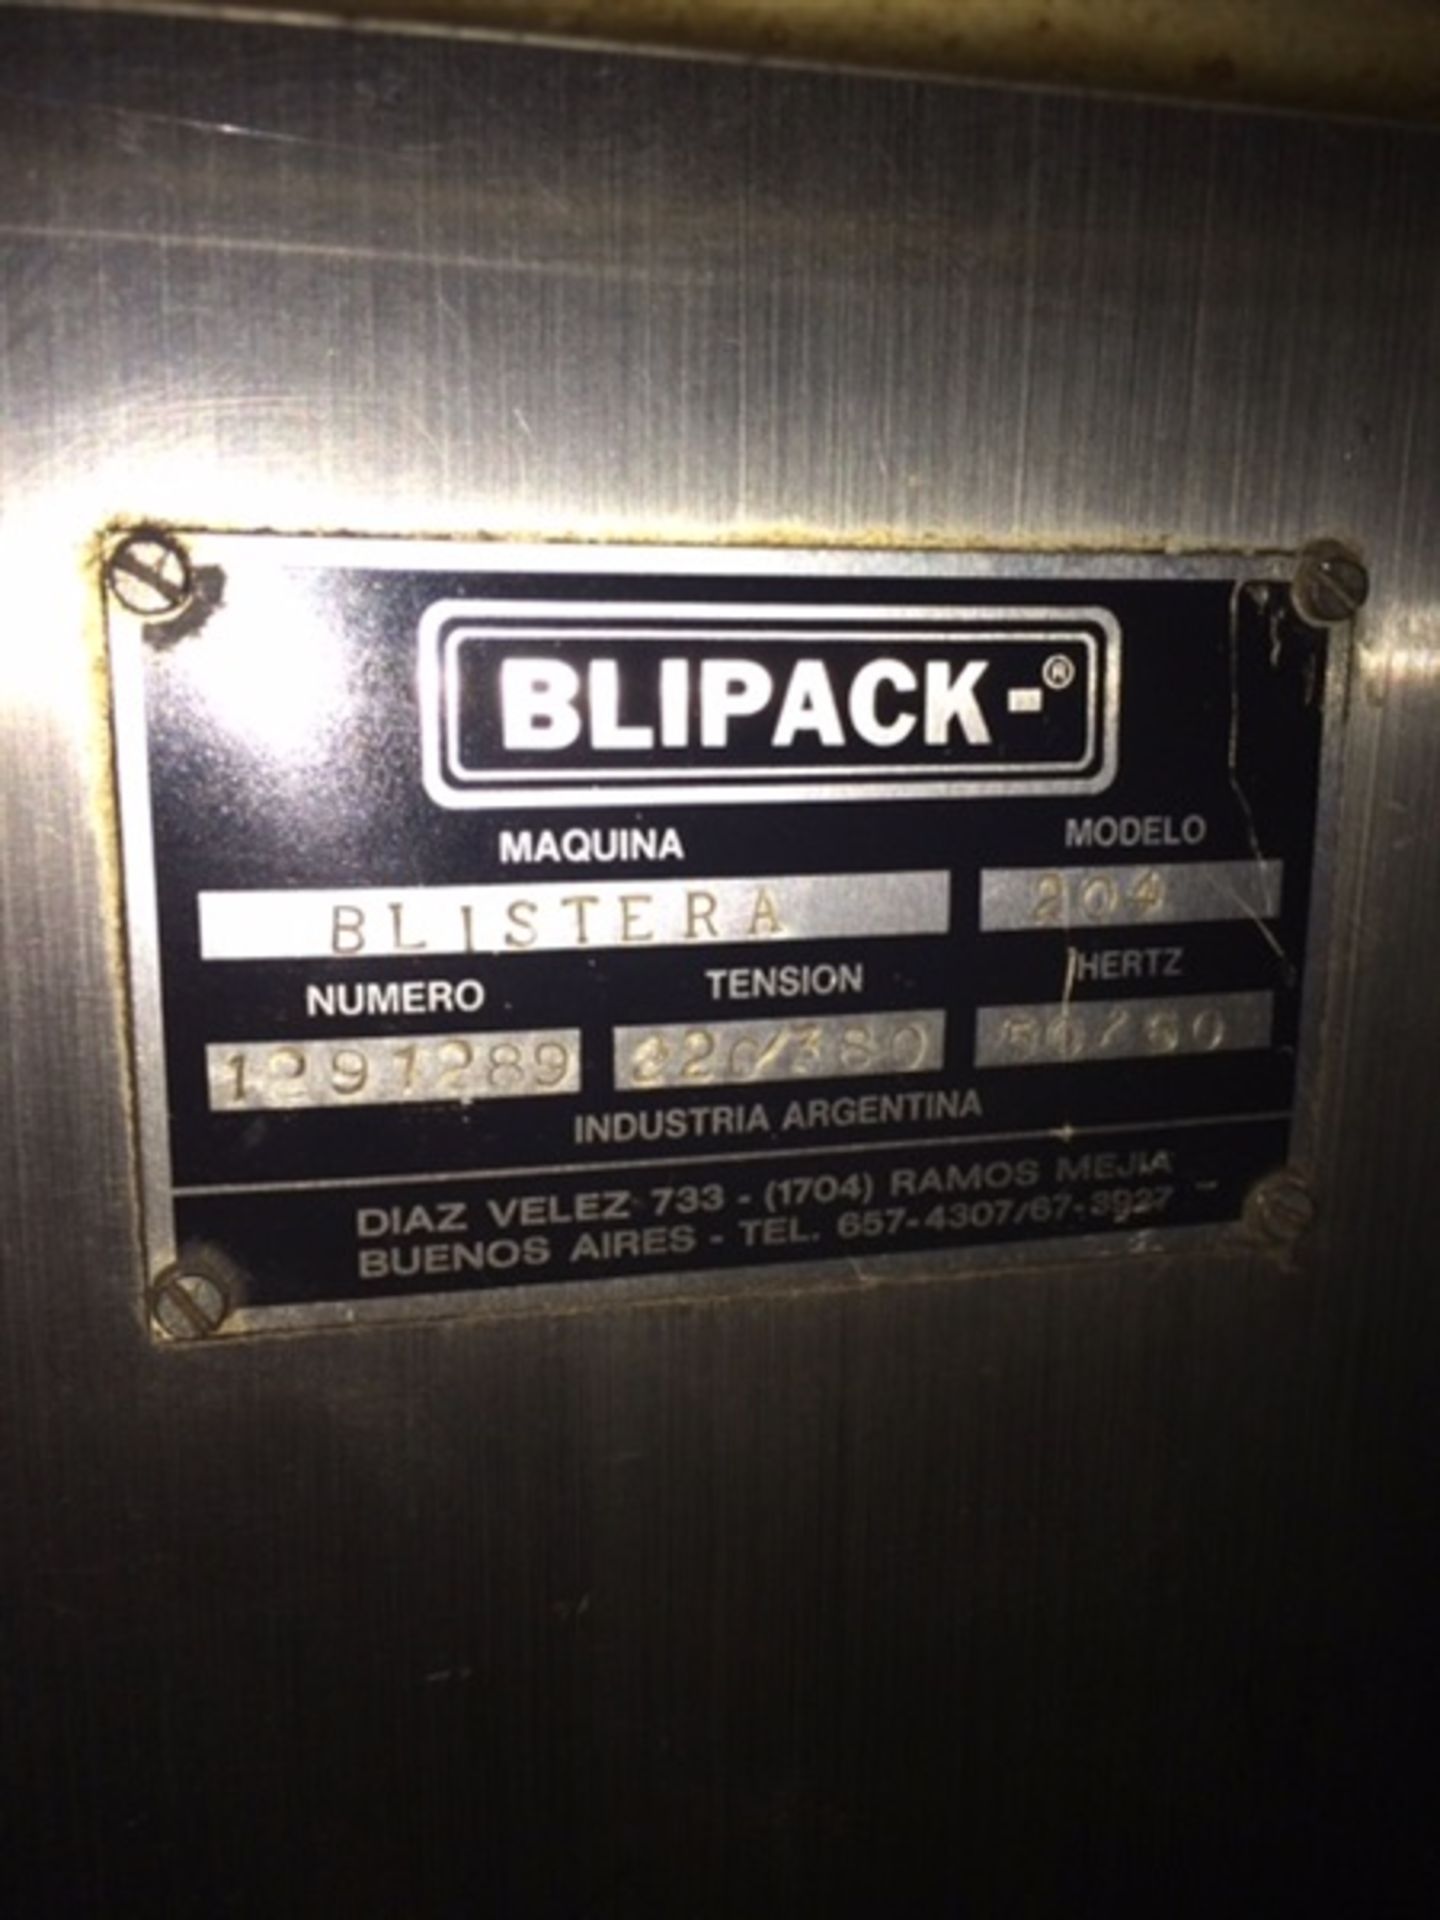 Blipack Blister Packaging System - Image 4 of 4